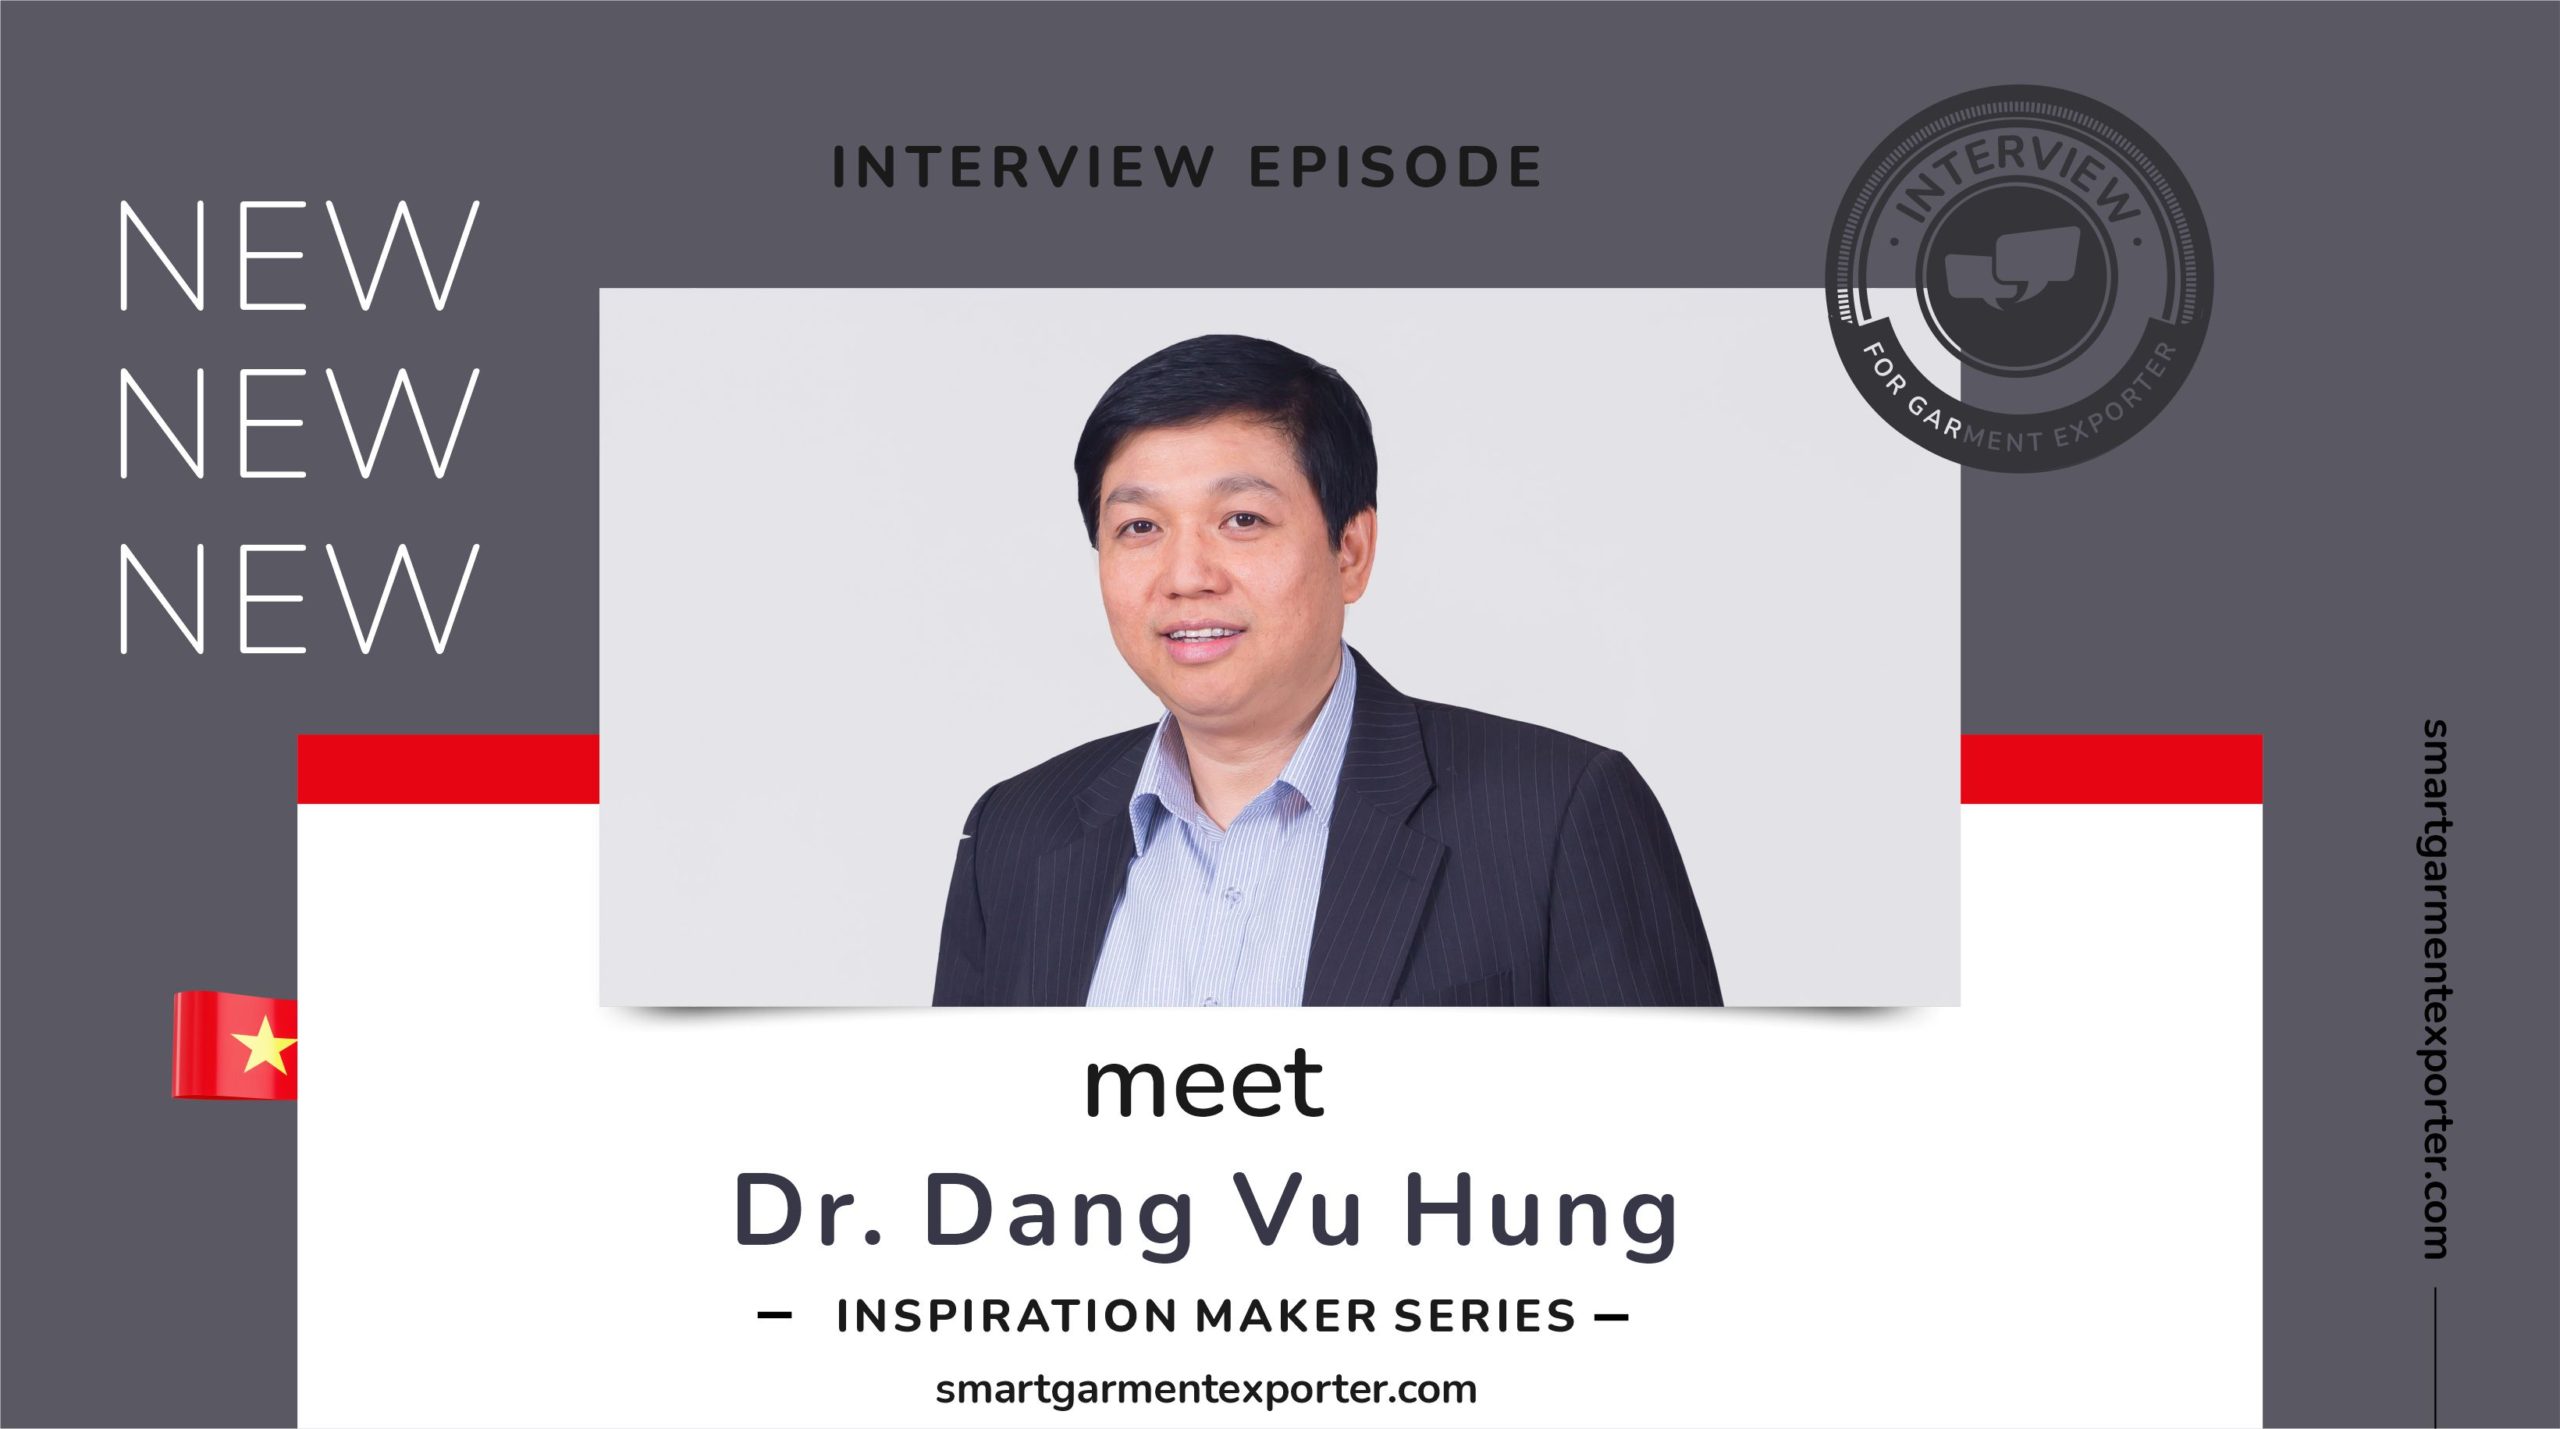 What’s the big secret, Dr. Dang Vu Hung?